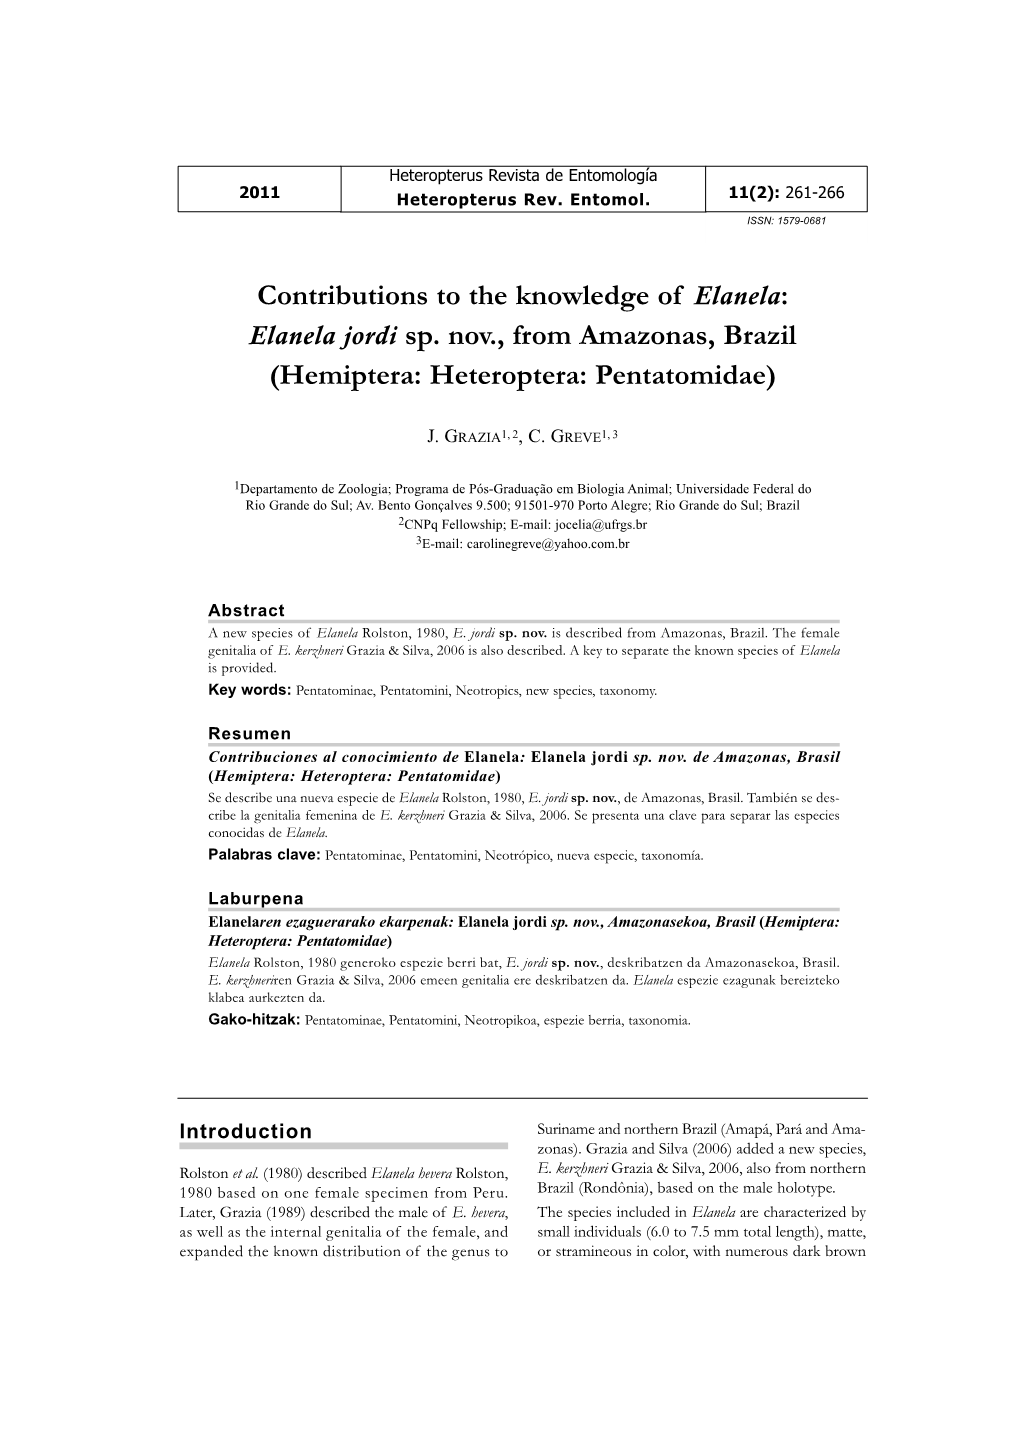 Contributions to the Knowledge of Elanela: Elanela Jordi Sp. Nov., from Amazonas, Brazil (Hemiptera: Heteroptera: Pentatomidae)